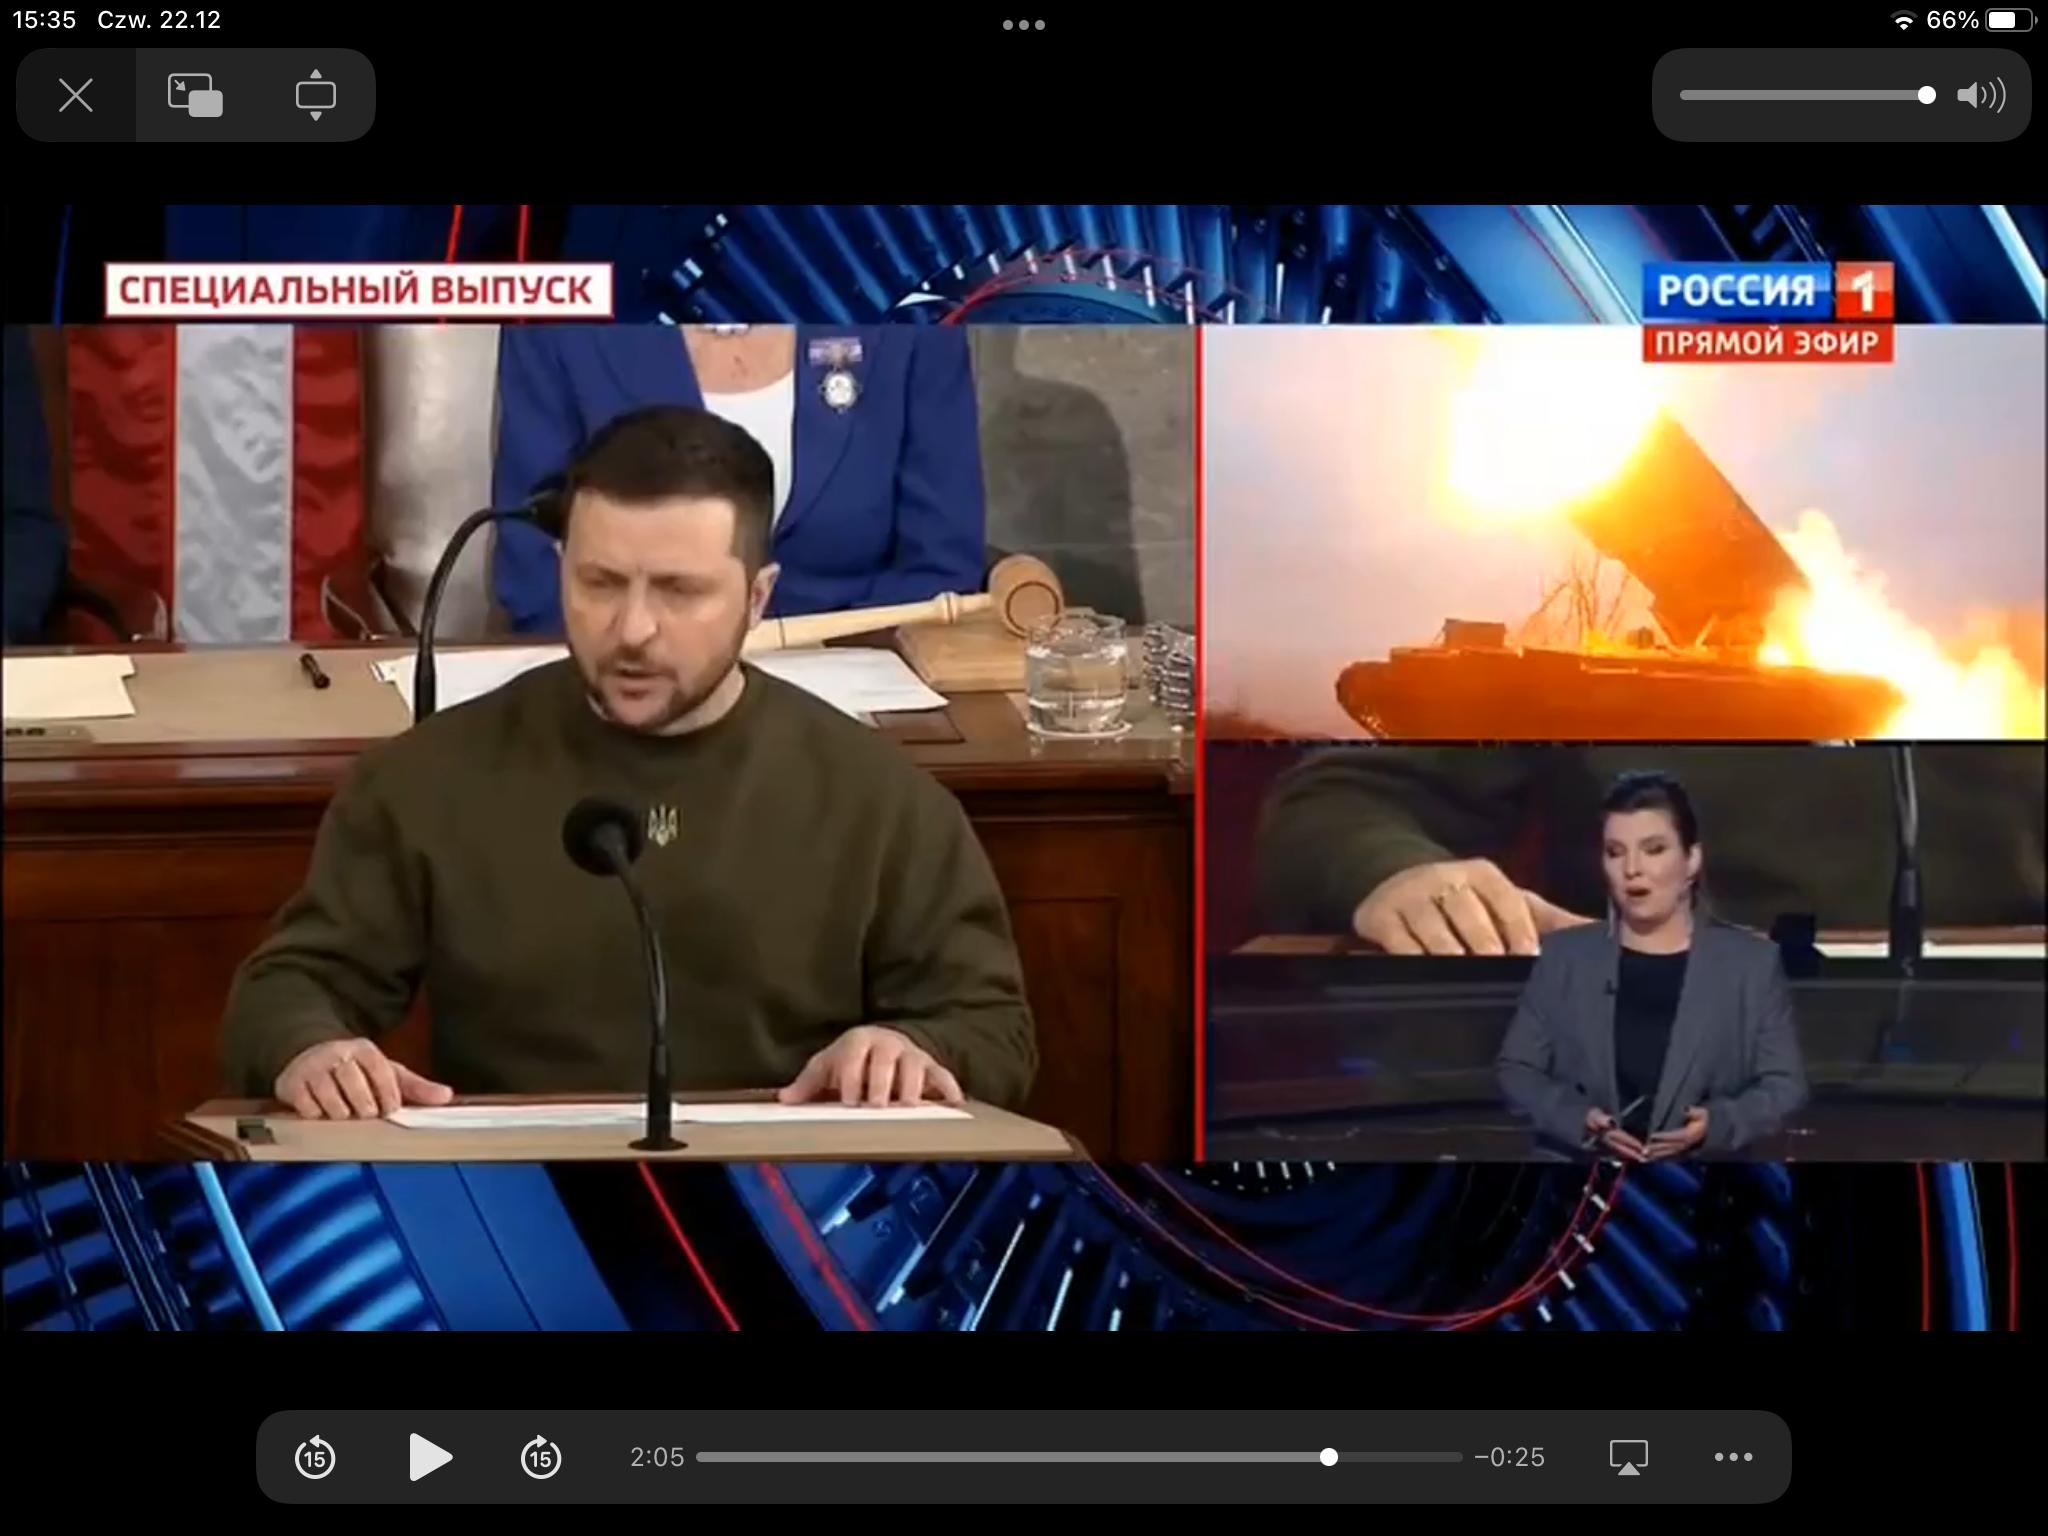 Ekran telewizora podzielony na trzy części. Na jednej prezydent Zełenski przemawia w Kongresie, na drugiej - strzelają rakiety, na trzeciej - kobieta w studiu telewizyjnym